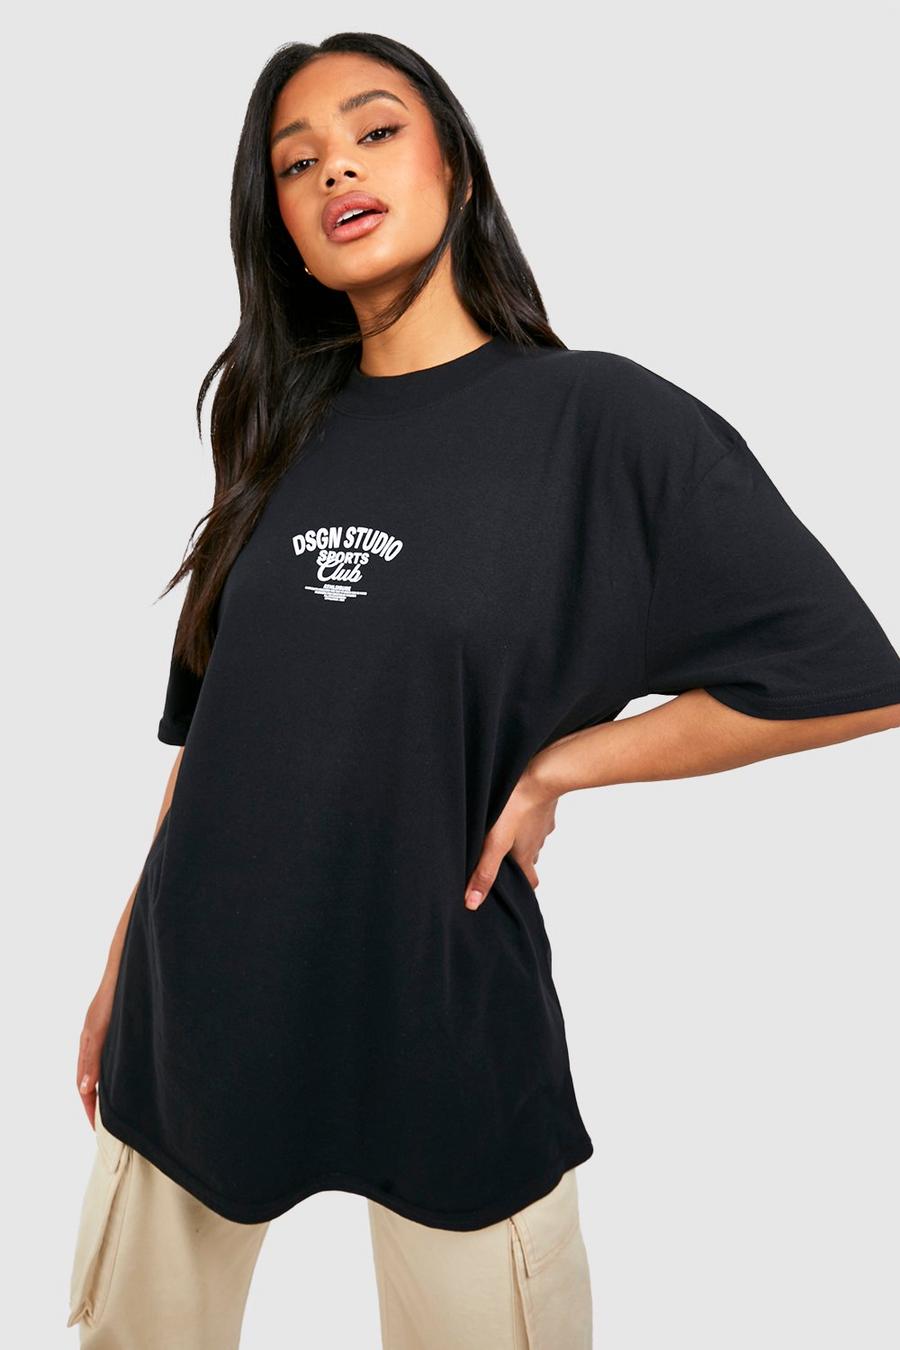 T-shirt oversize con slogan Dsgn Studio Sports Club, Black nero